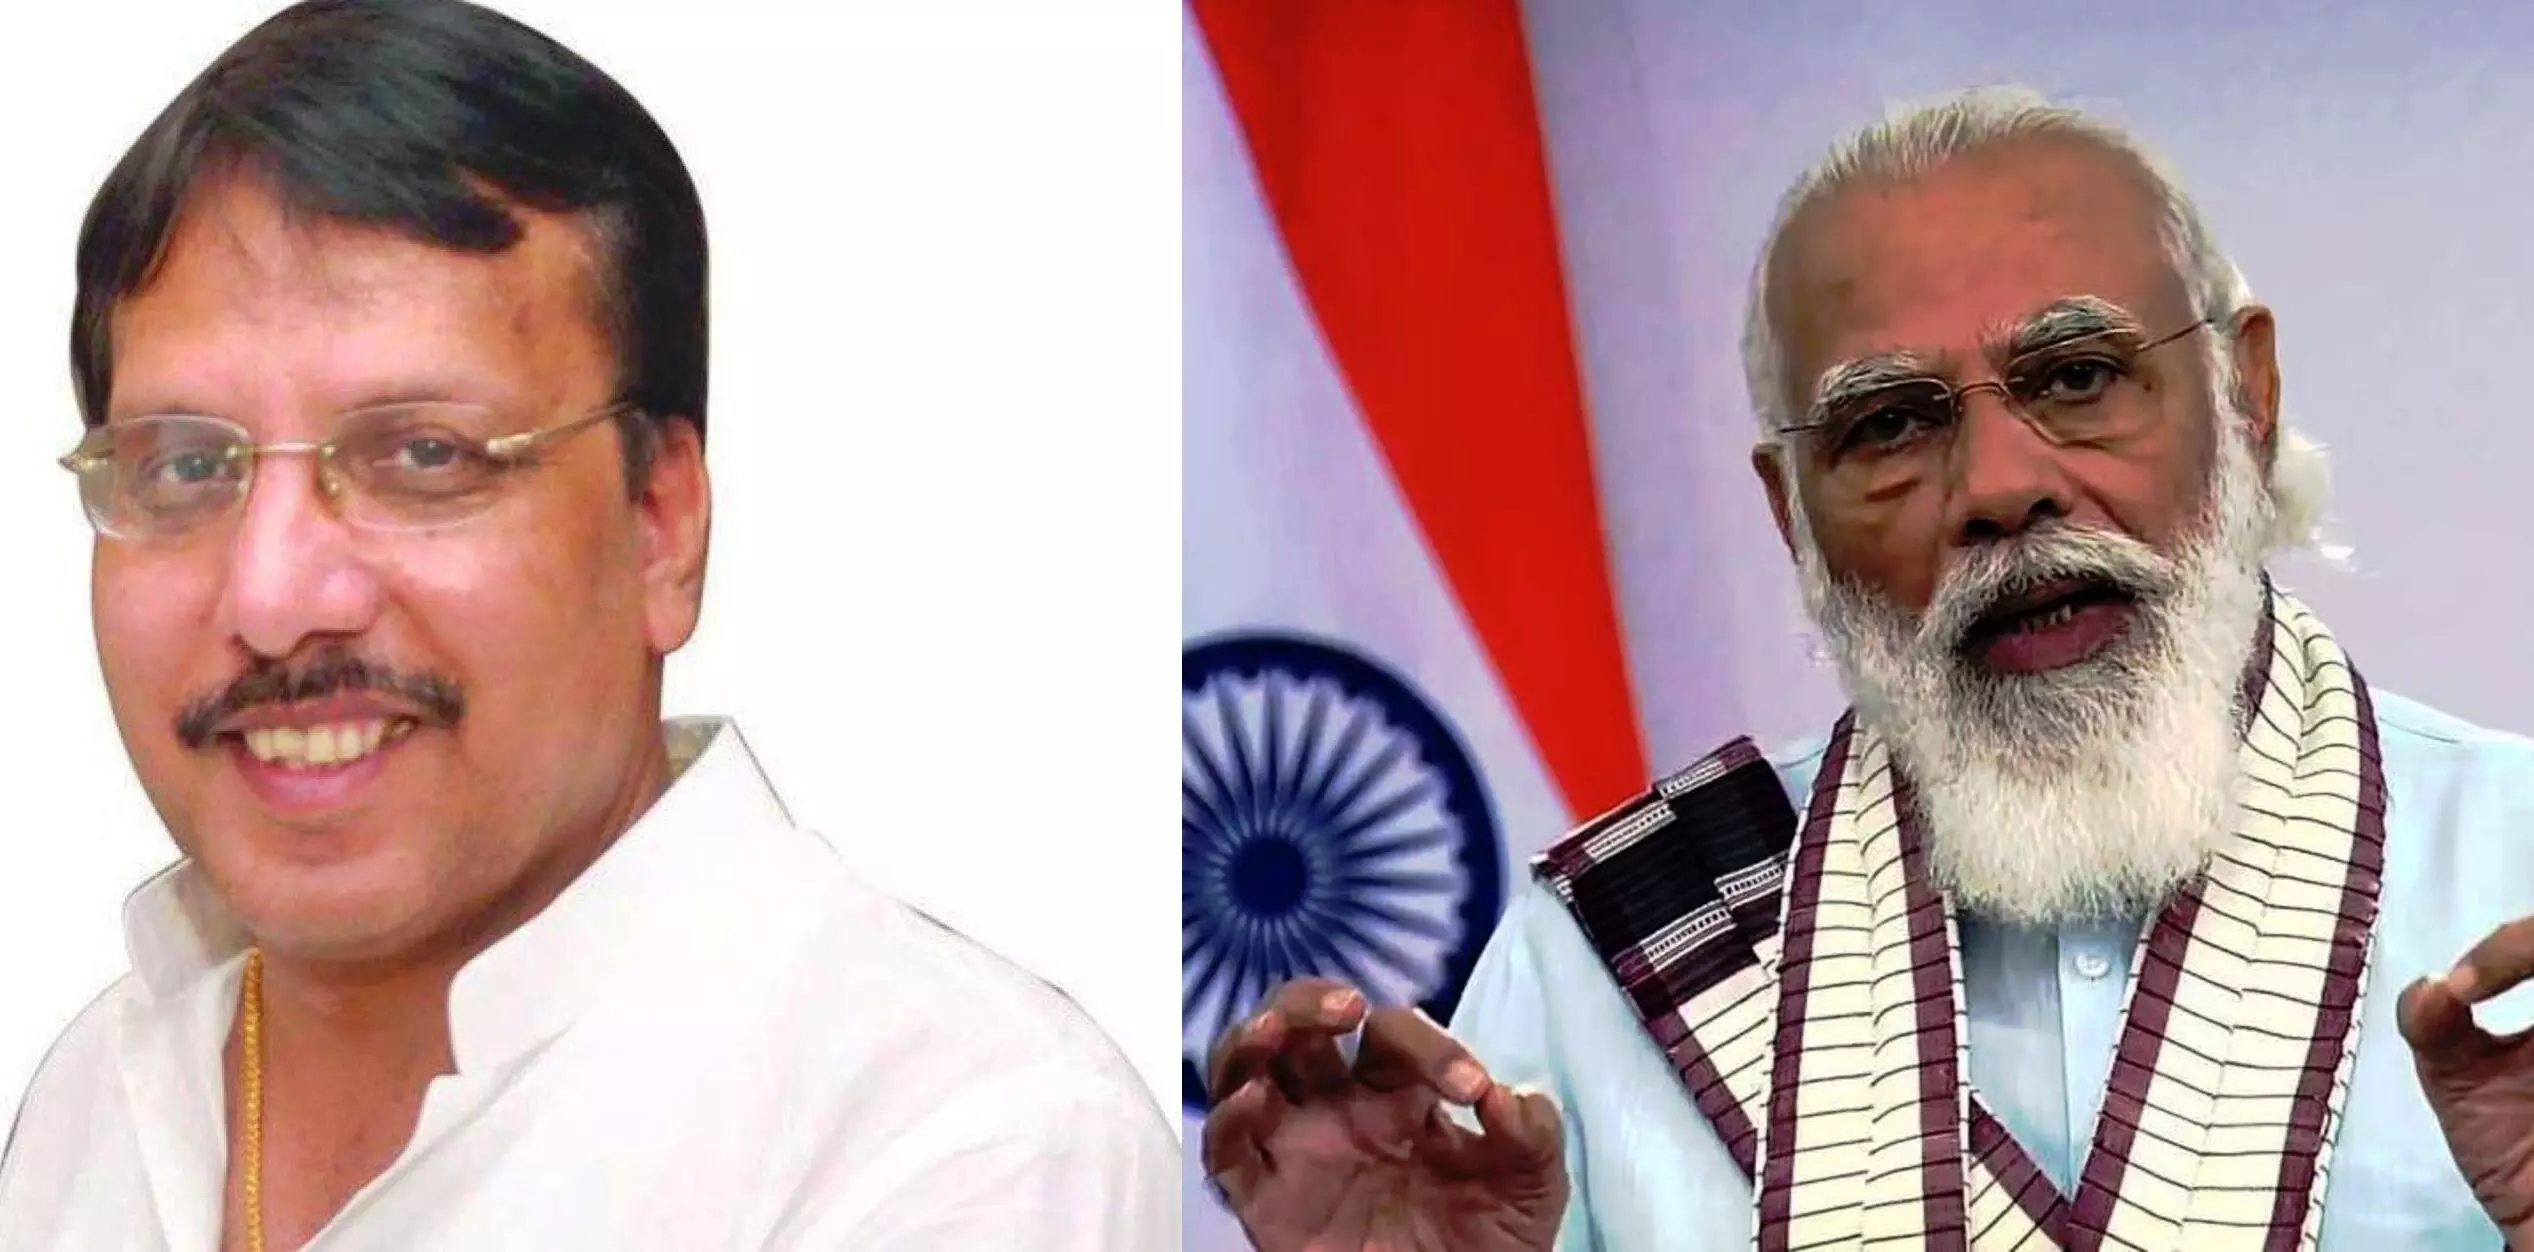 सपा प्रवक्ता राजीव राय ने मोदी सरकार पर बोला हमला, PM मोदी को ऐसा कह दिया कि तिलमिला जायेंगे भाजपाई